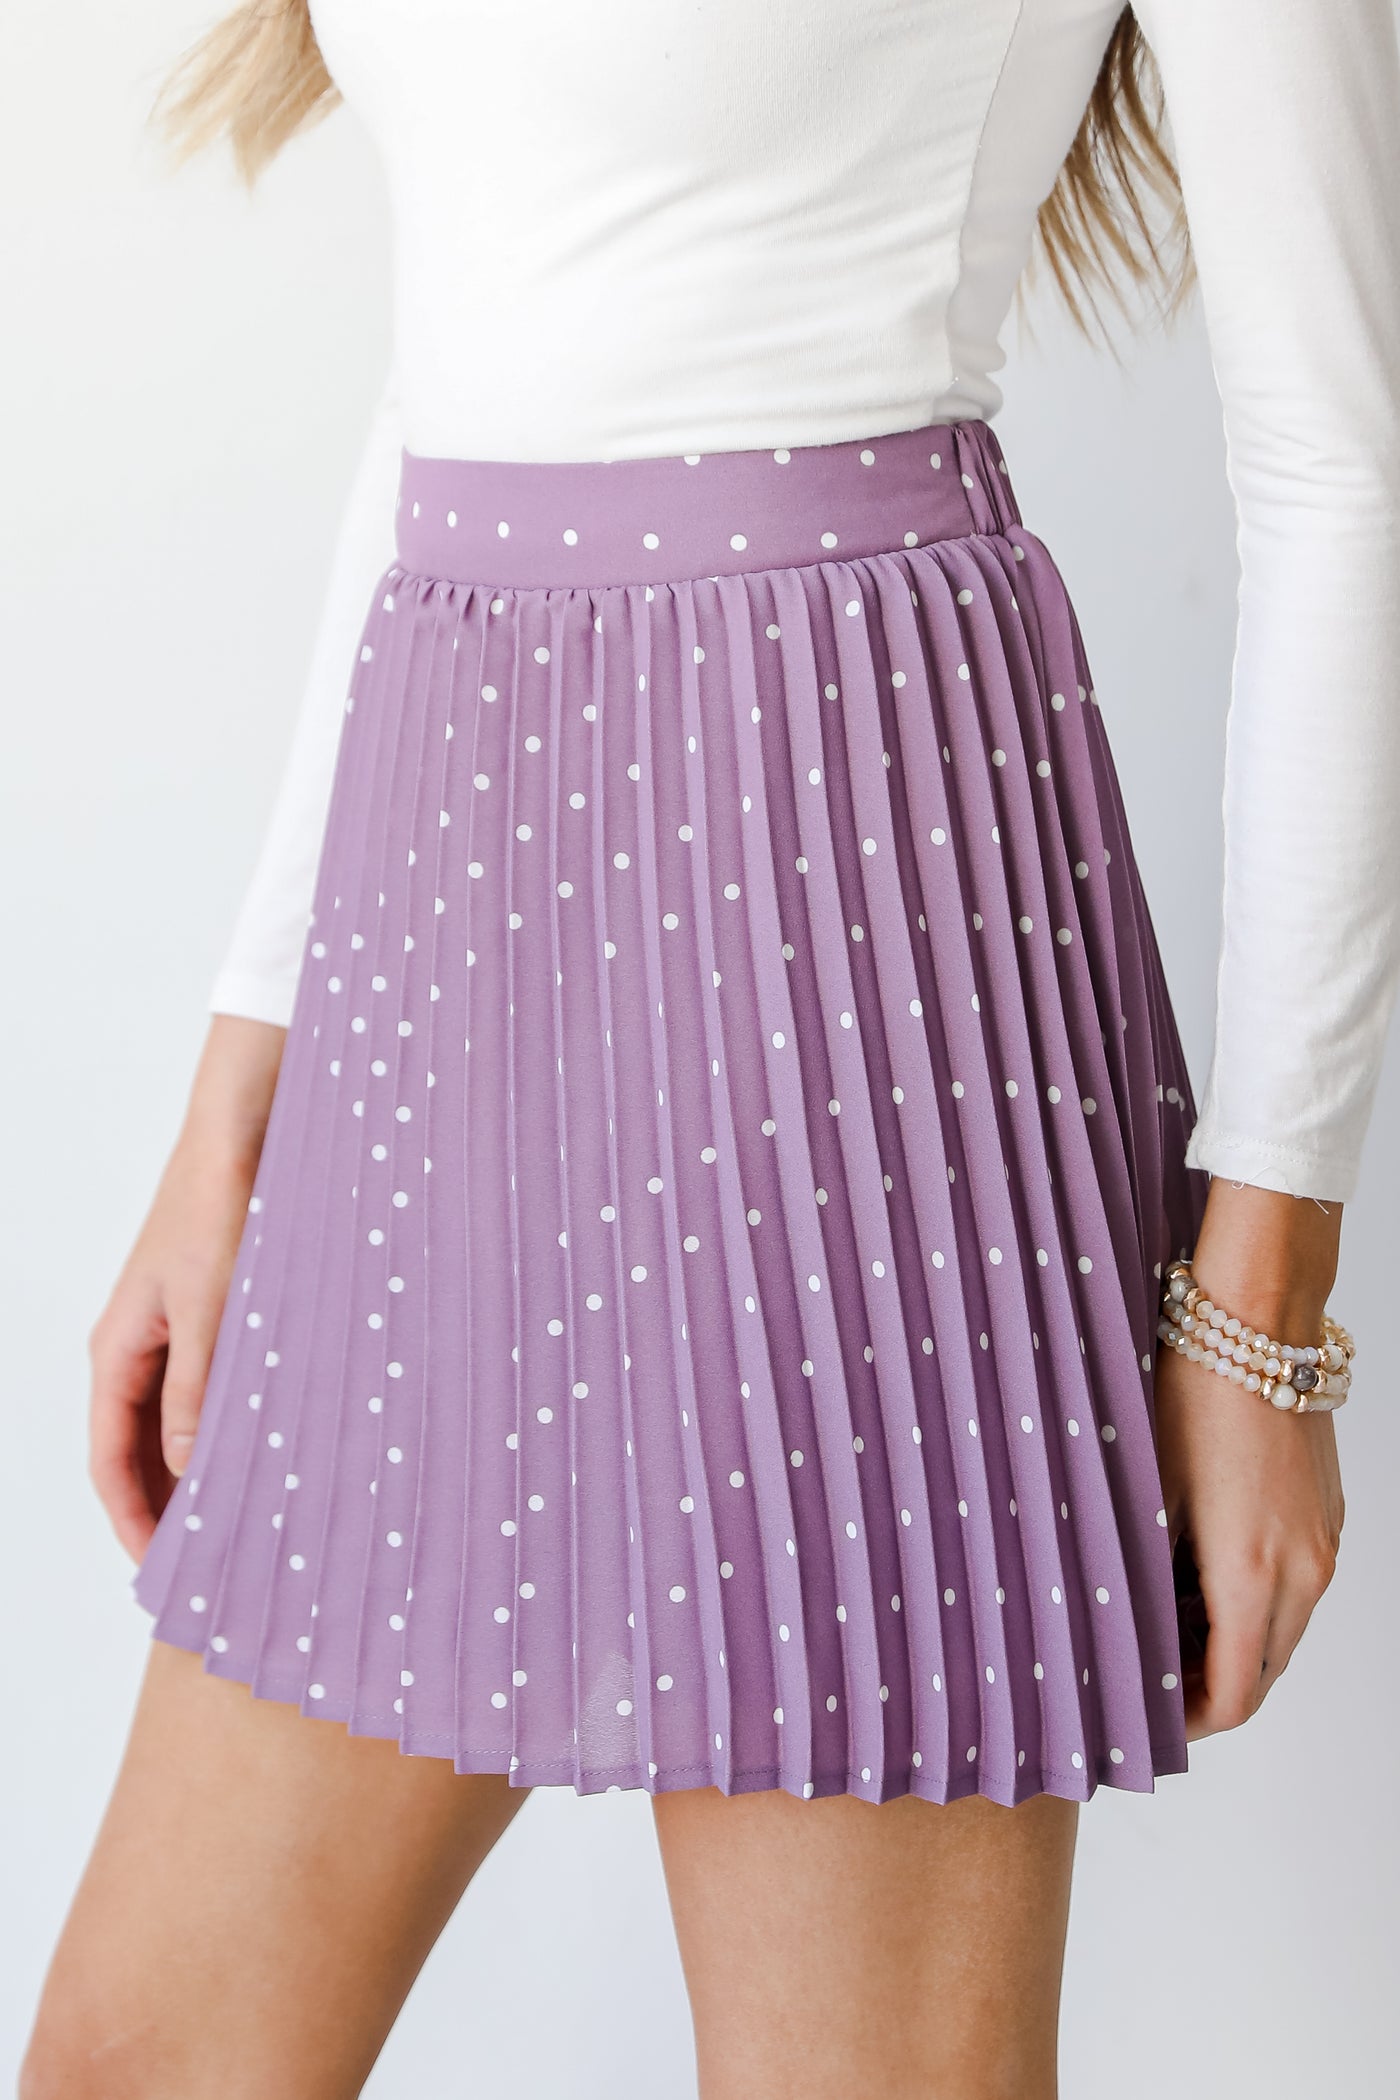 Polka Dot Pleated Mini Skirt side view